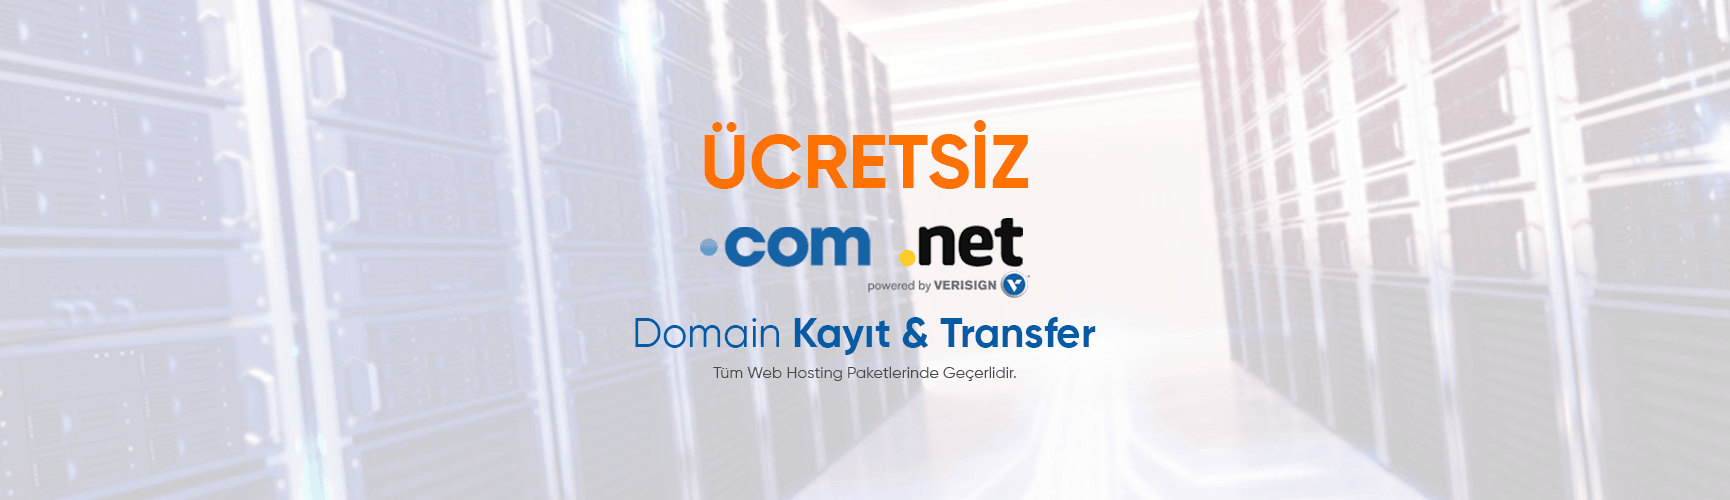 Ücretsiz Domain Kayıt ve Transfer Fırsatı!